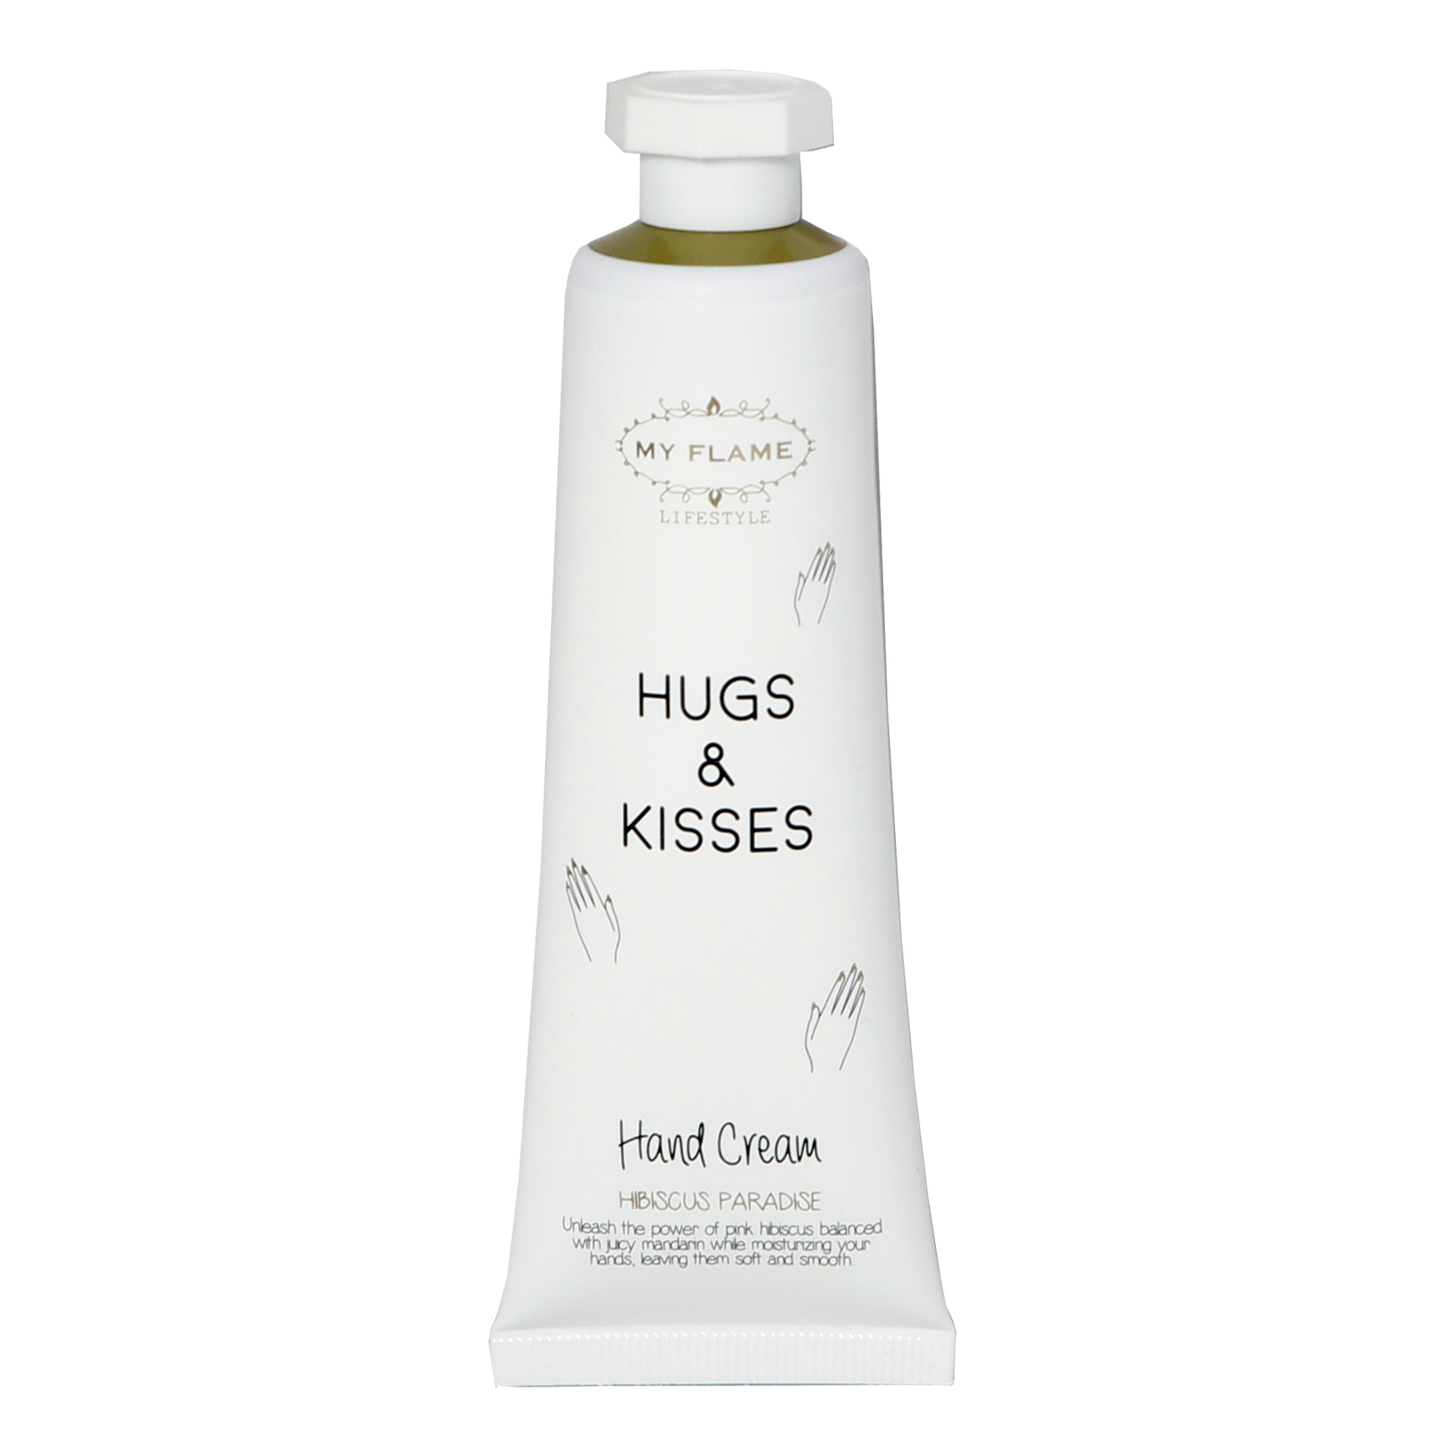 Handcrème I Hugs & Kisses